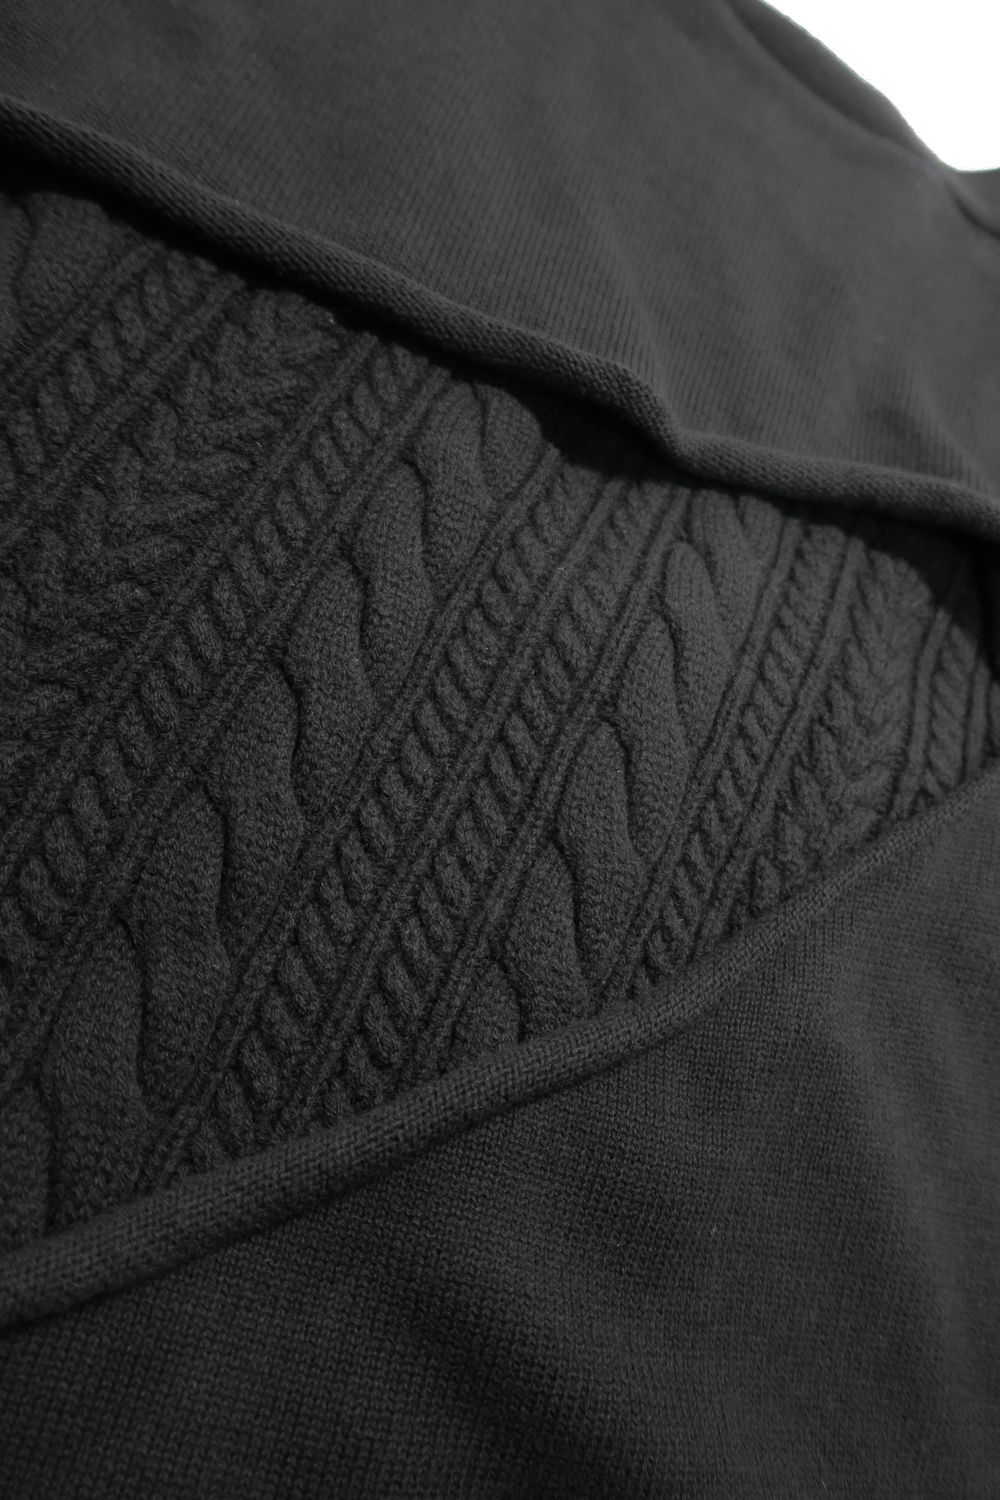 Layered Cut Out Knit Cardigan"Black"/レイヤードカットアウトニットカーディガン"ブラック"